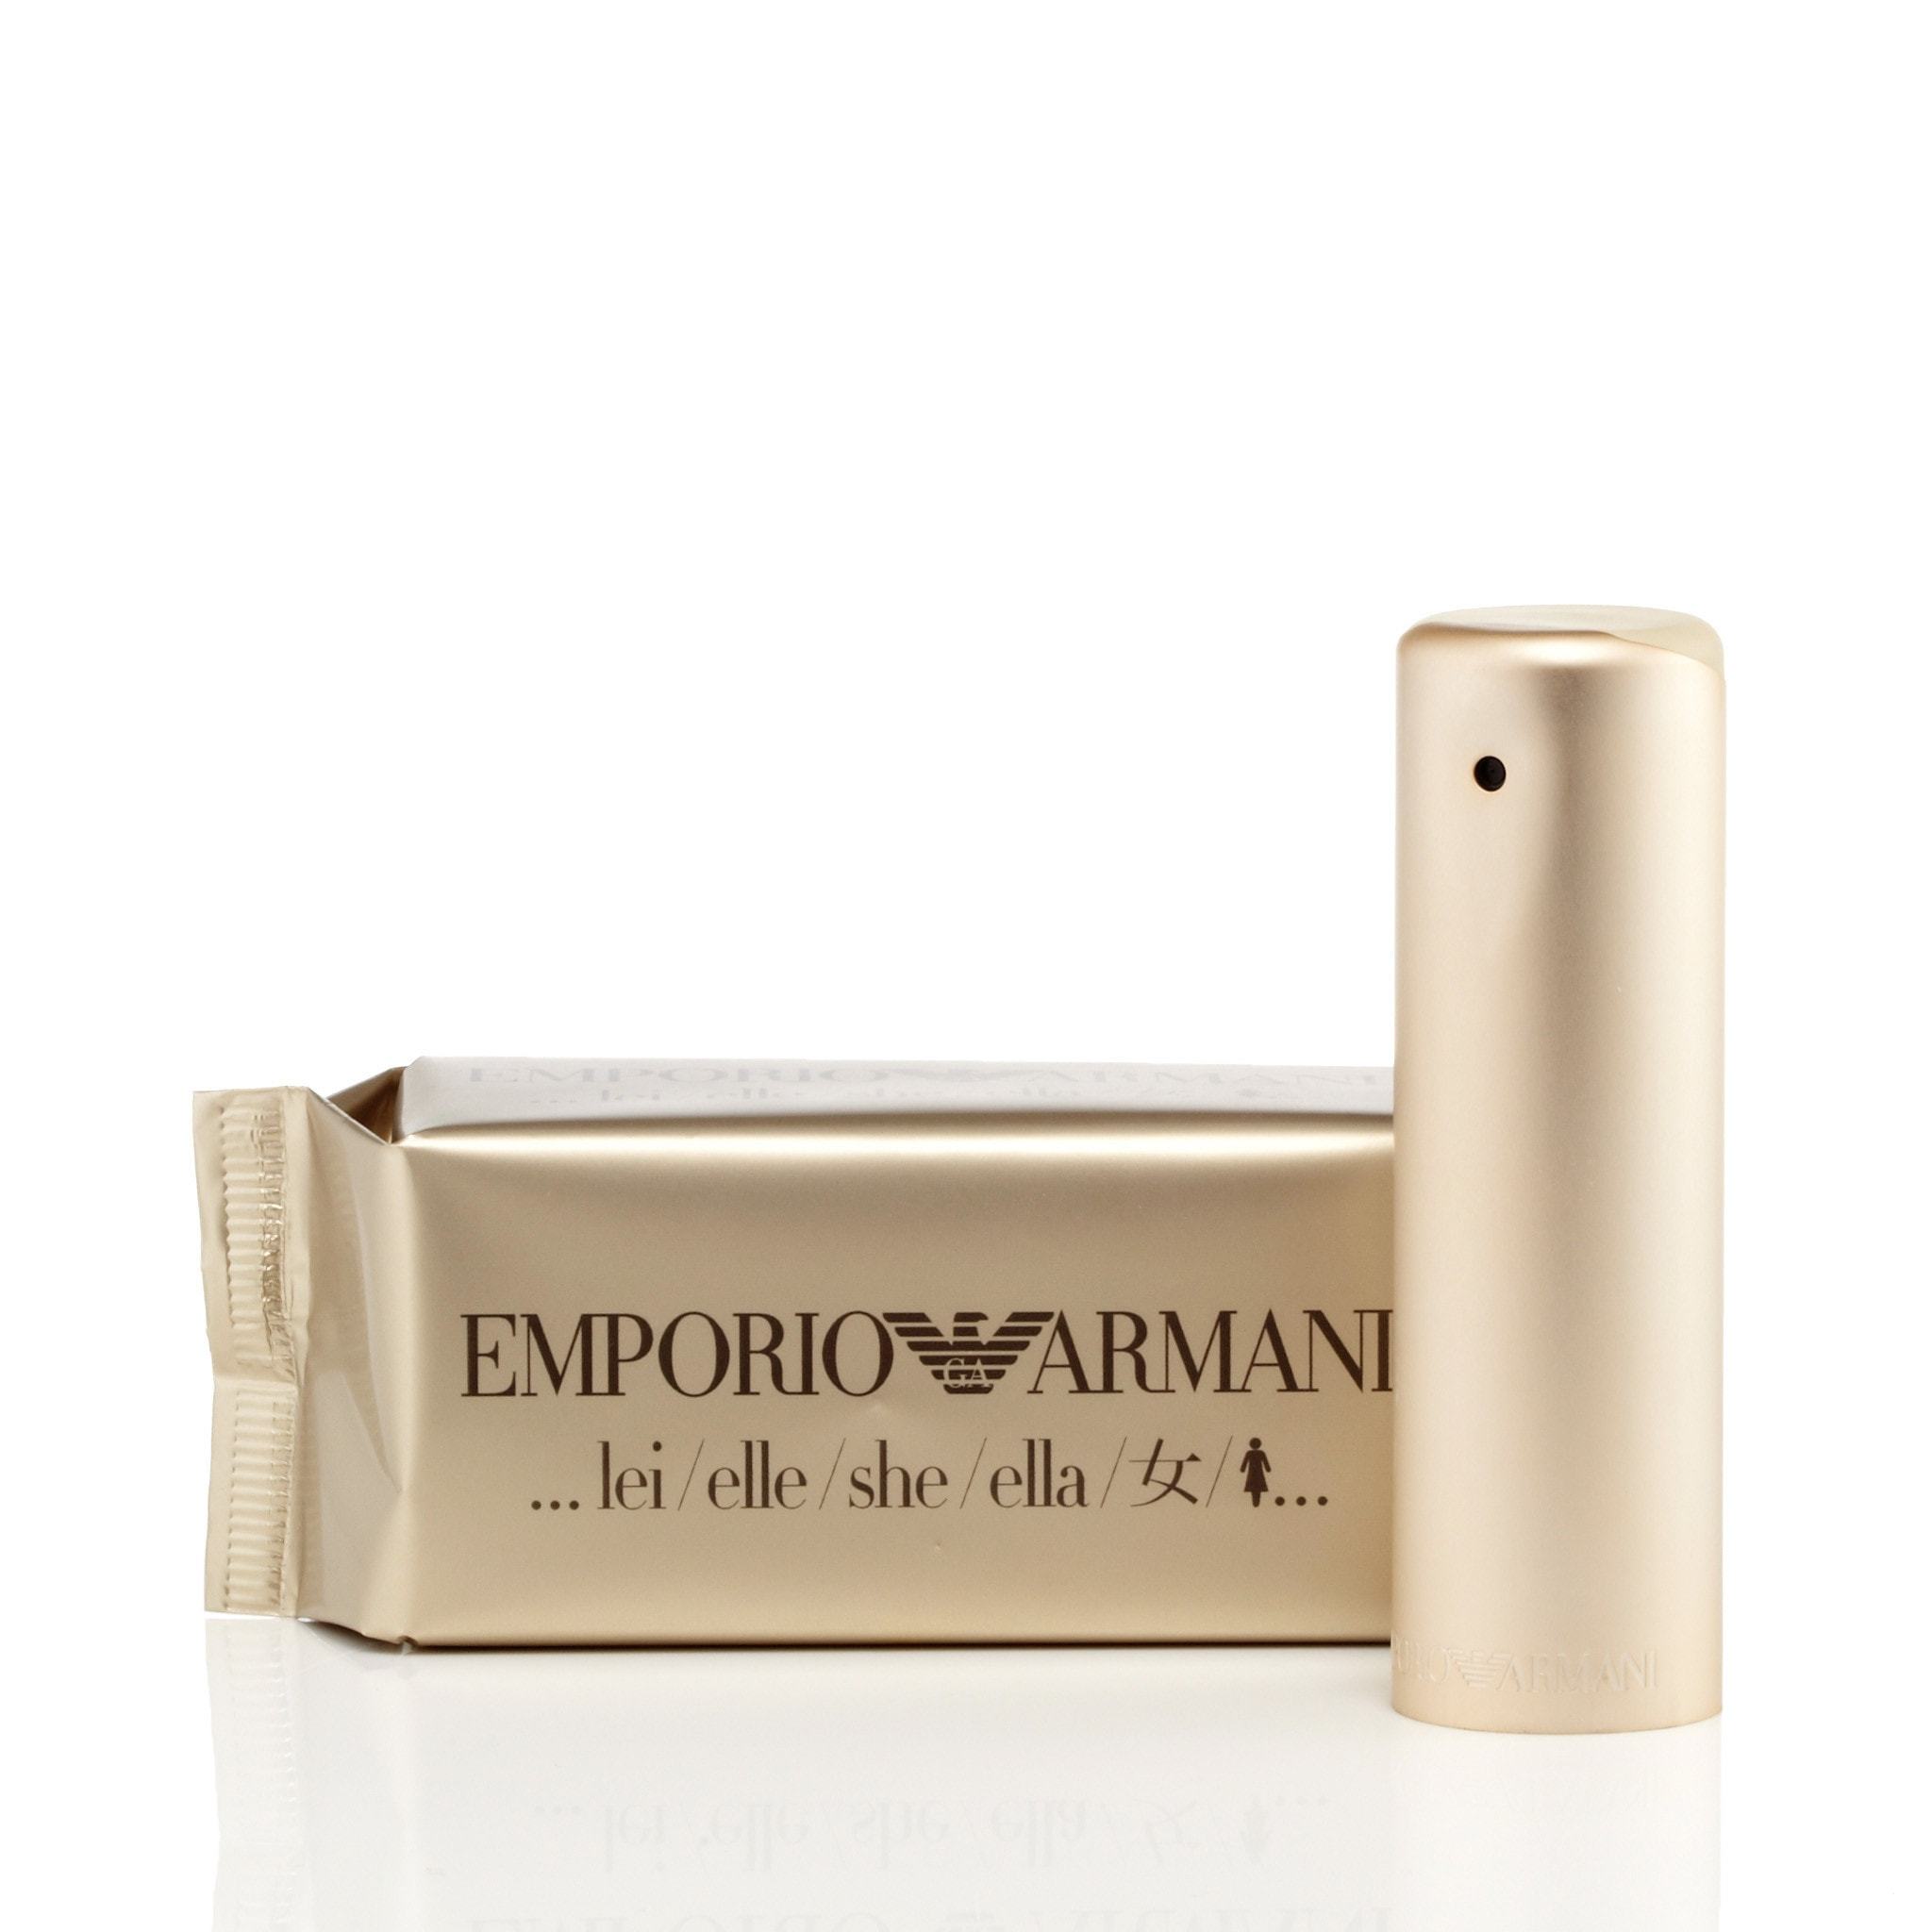 Emporio Armani EDP for Women by Giorgio Armani